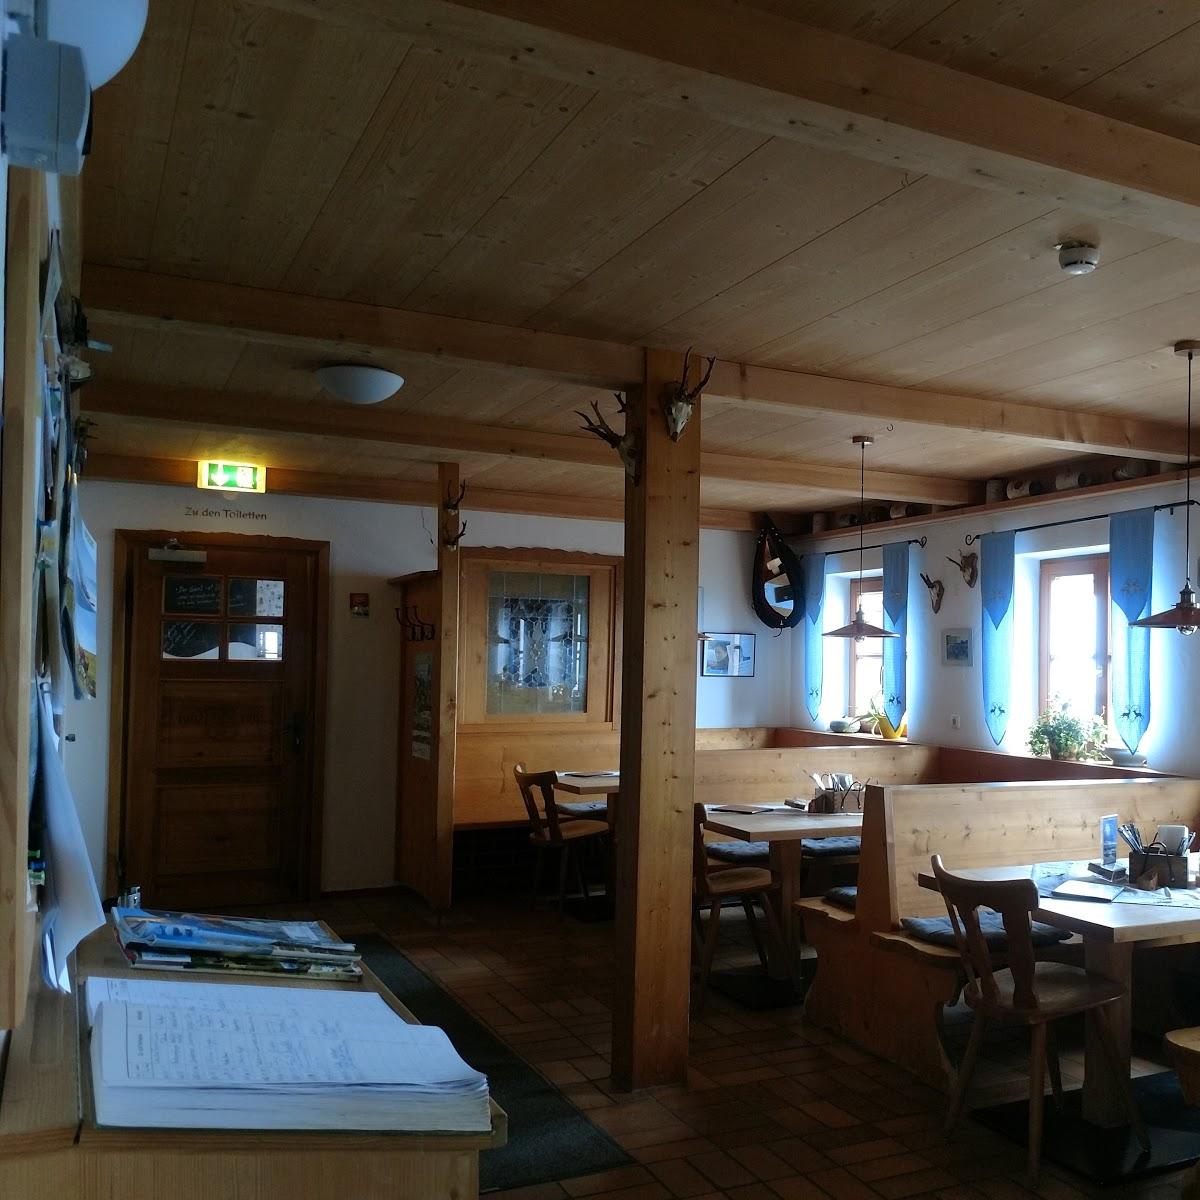 Restaurant "Landgasthof Zachschuster" in  Gaißach